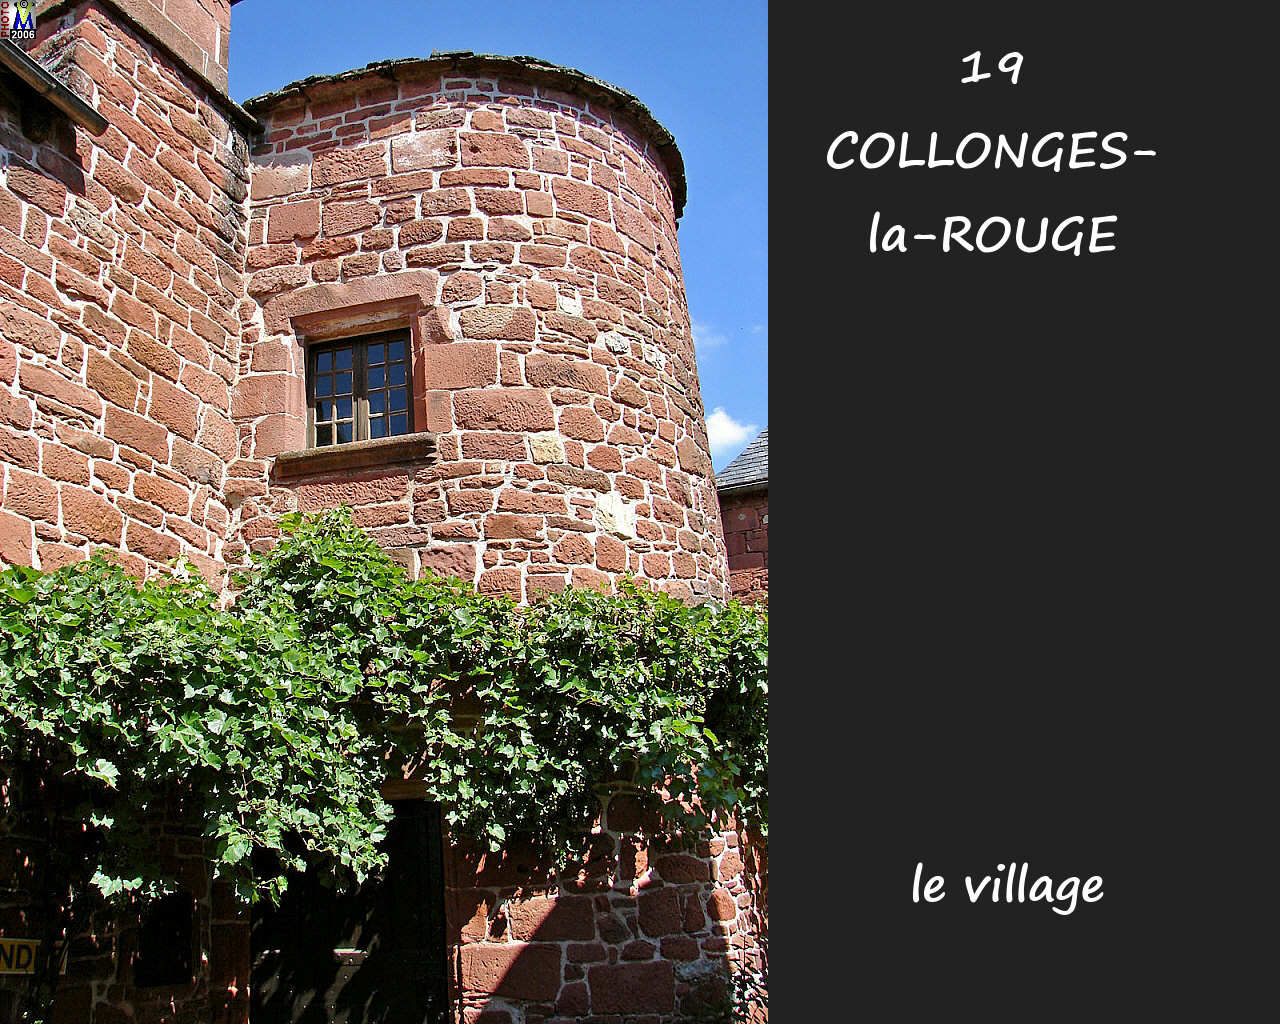 19COLLONGES-ROUGE_village_184.jpg